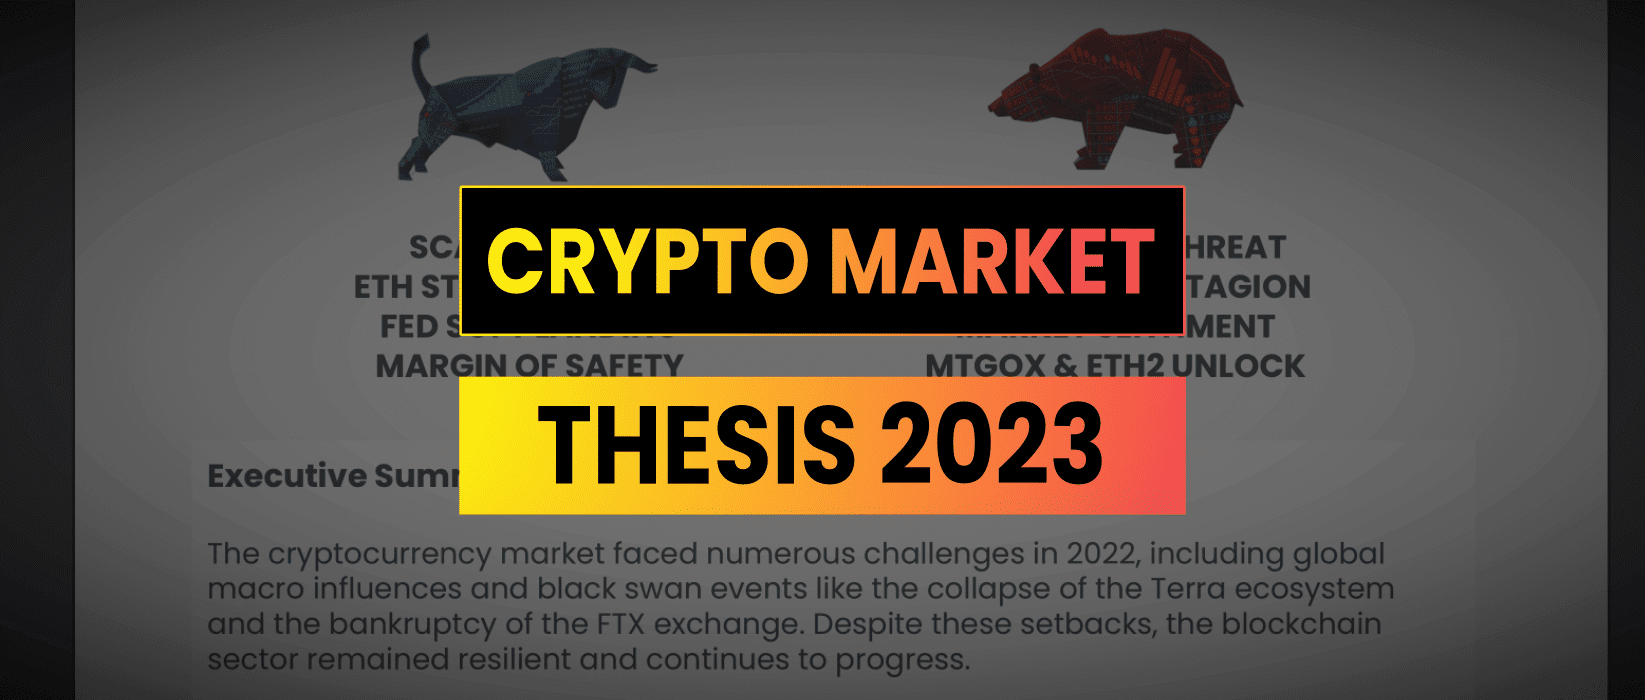 Crypto Market Thesis Thumbnail